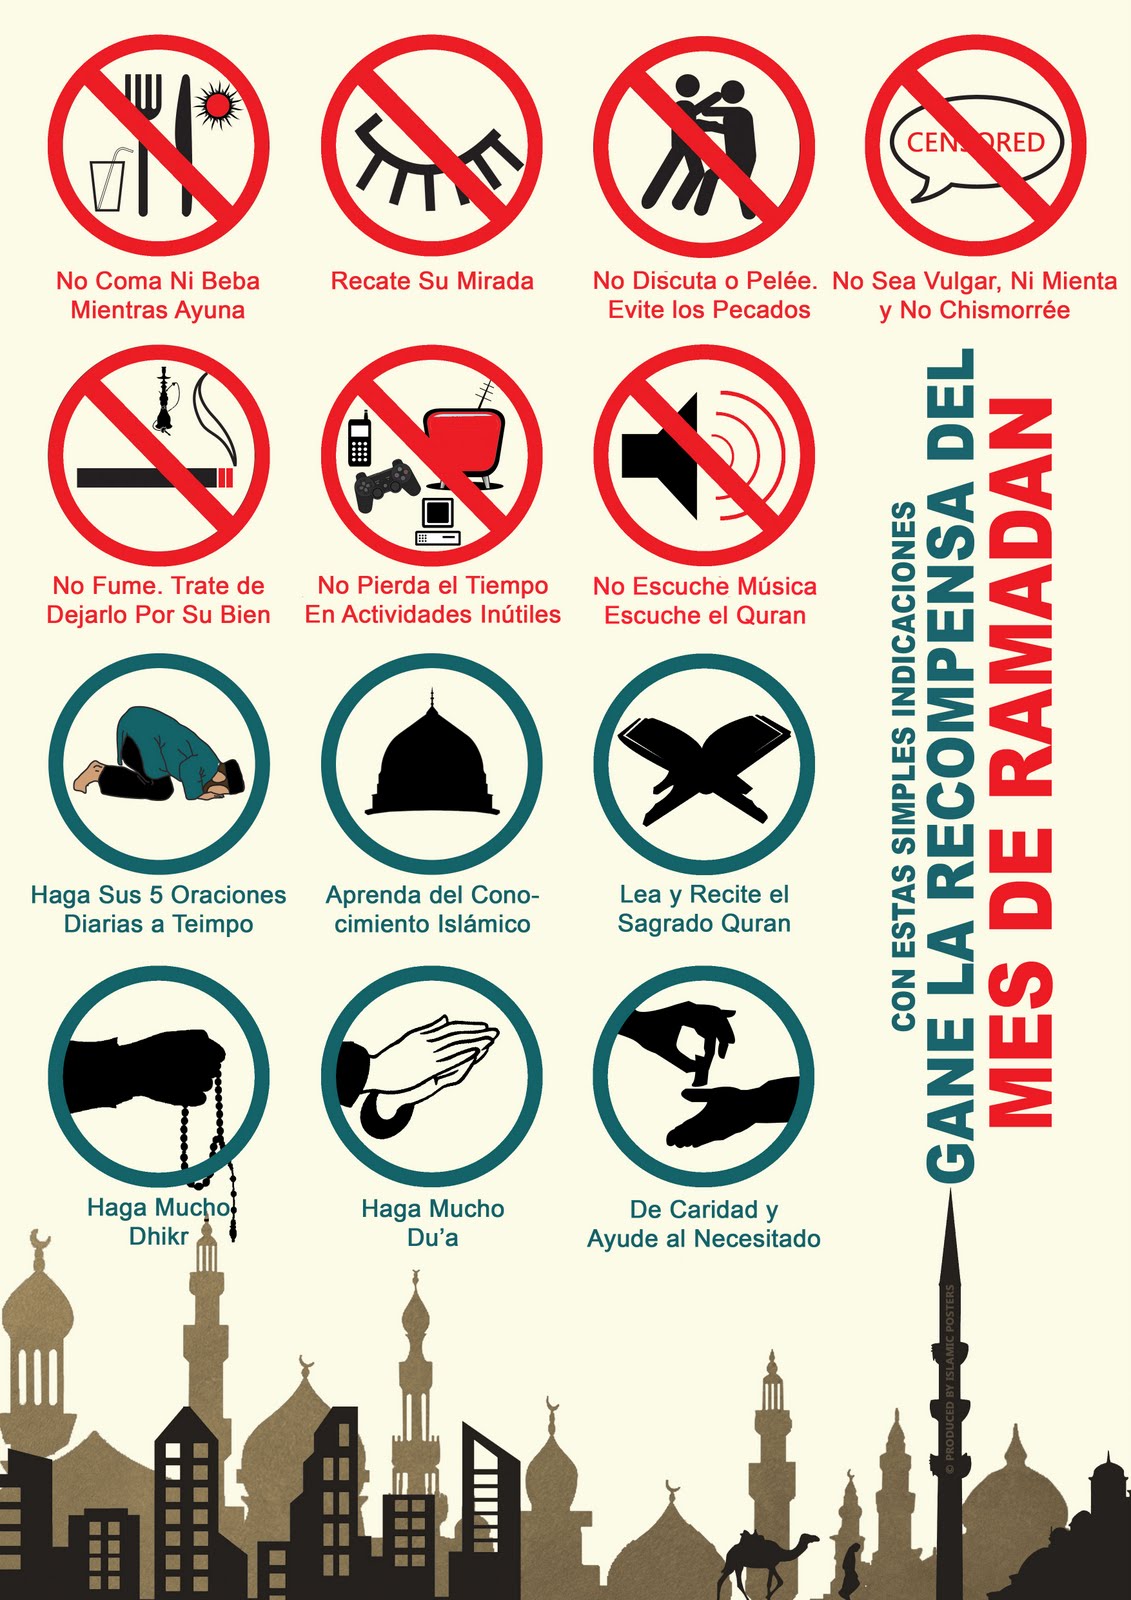 Можно ли электронные сигареты в рамадан. Рамадан что нельзя. Чего нельзя в Рамадан. Запреты в месяц Рамадан. Запреты в Рамадан пост.